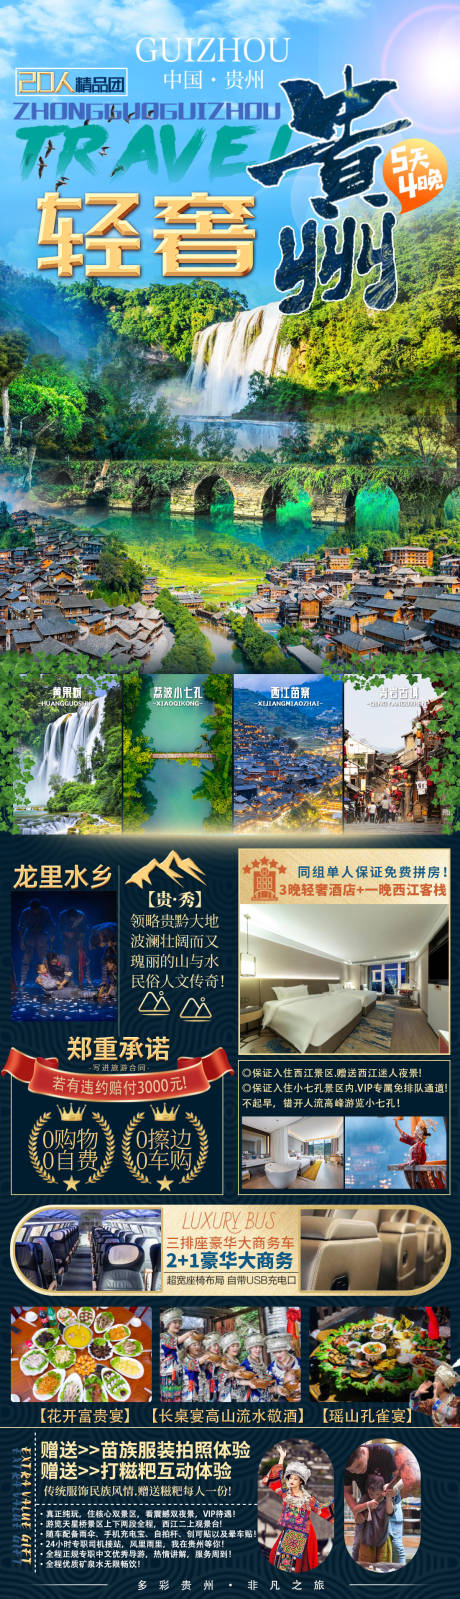 贵州旅游海报设计 